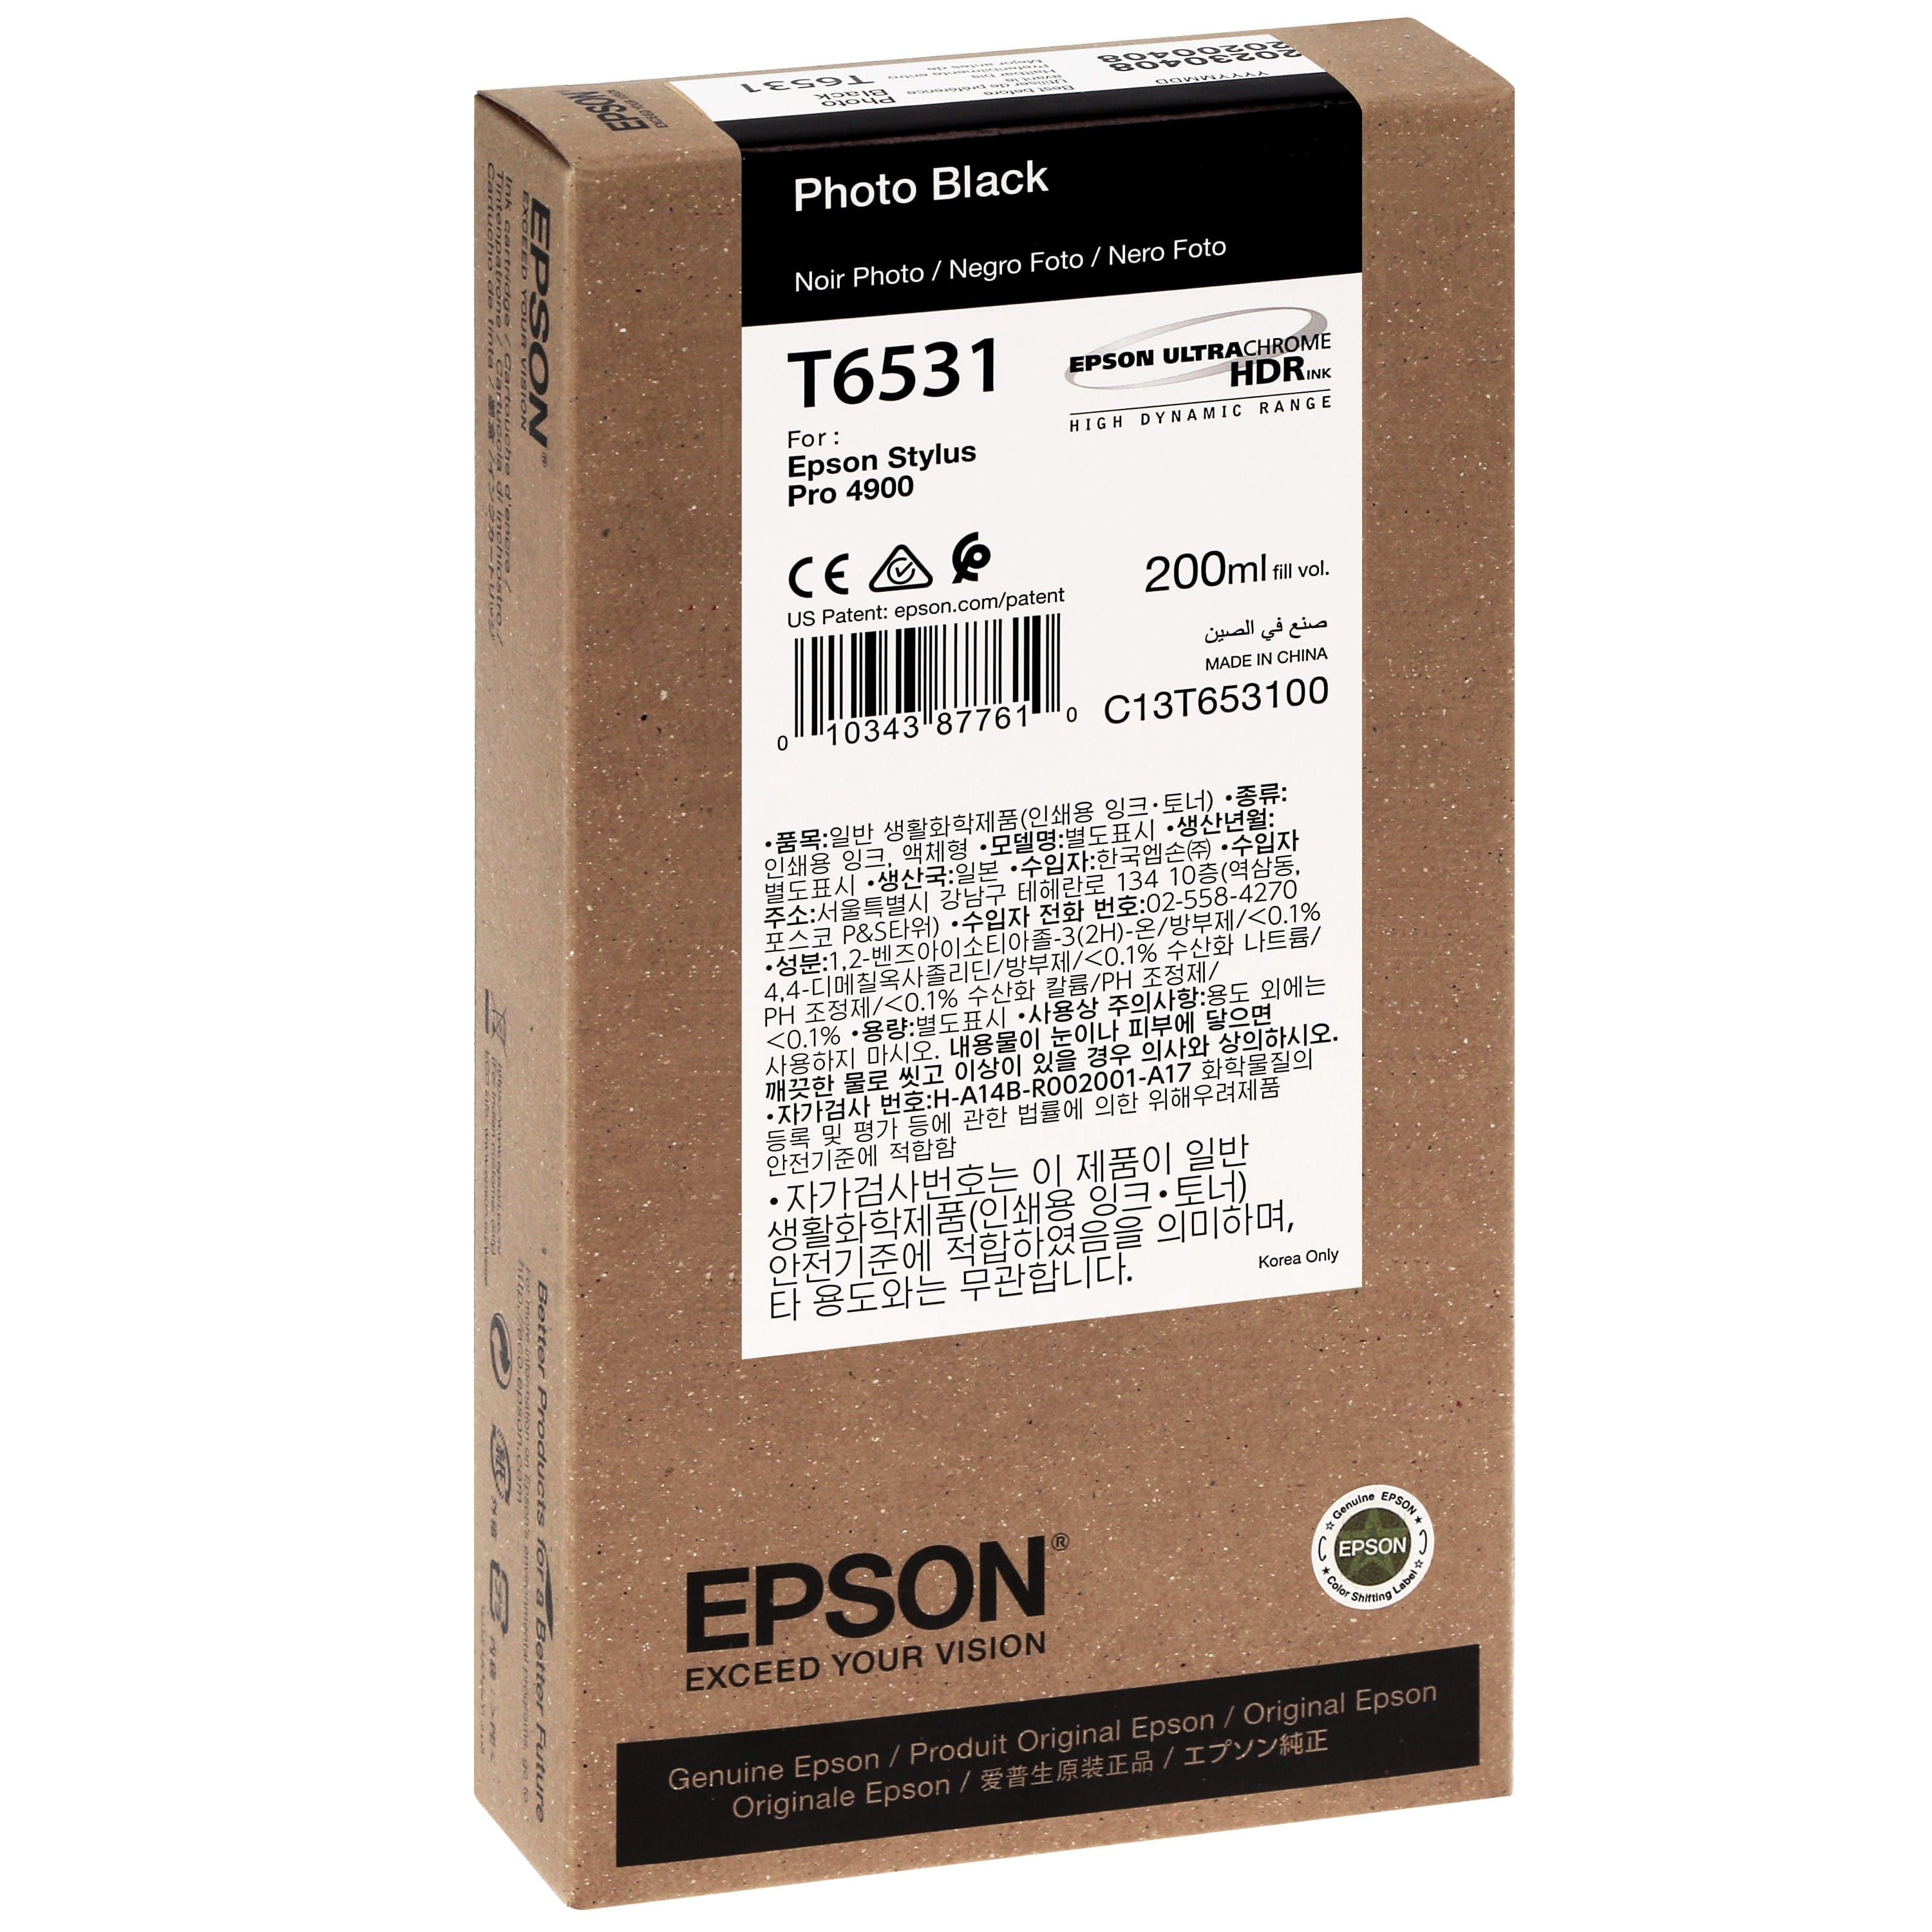 EPSON - Cartouche d'encre traceur T6531 Pour imprimante 4900 Noir Photo - 200ml